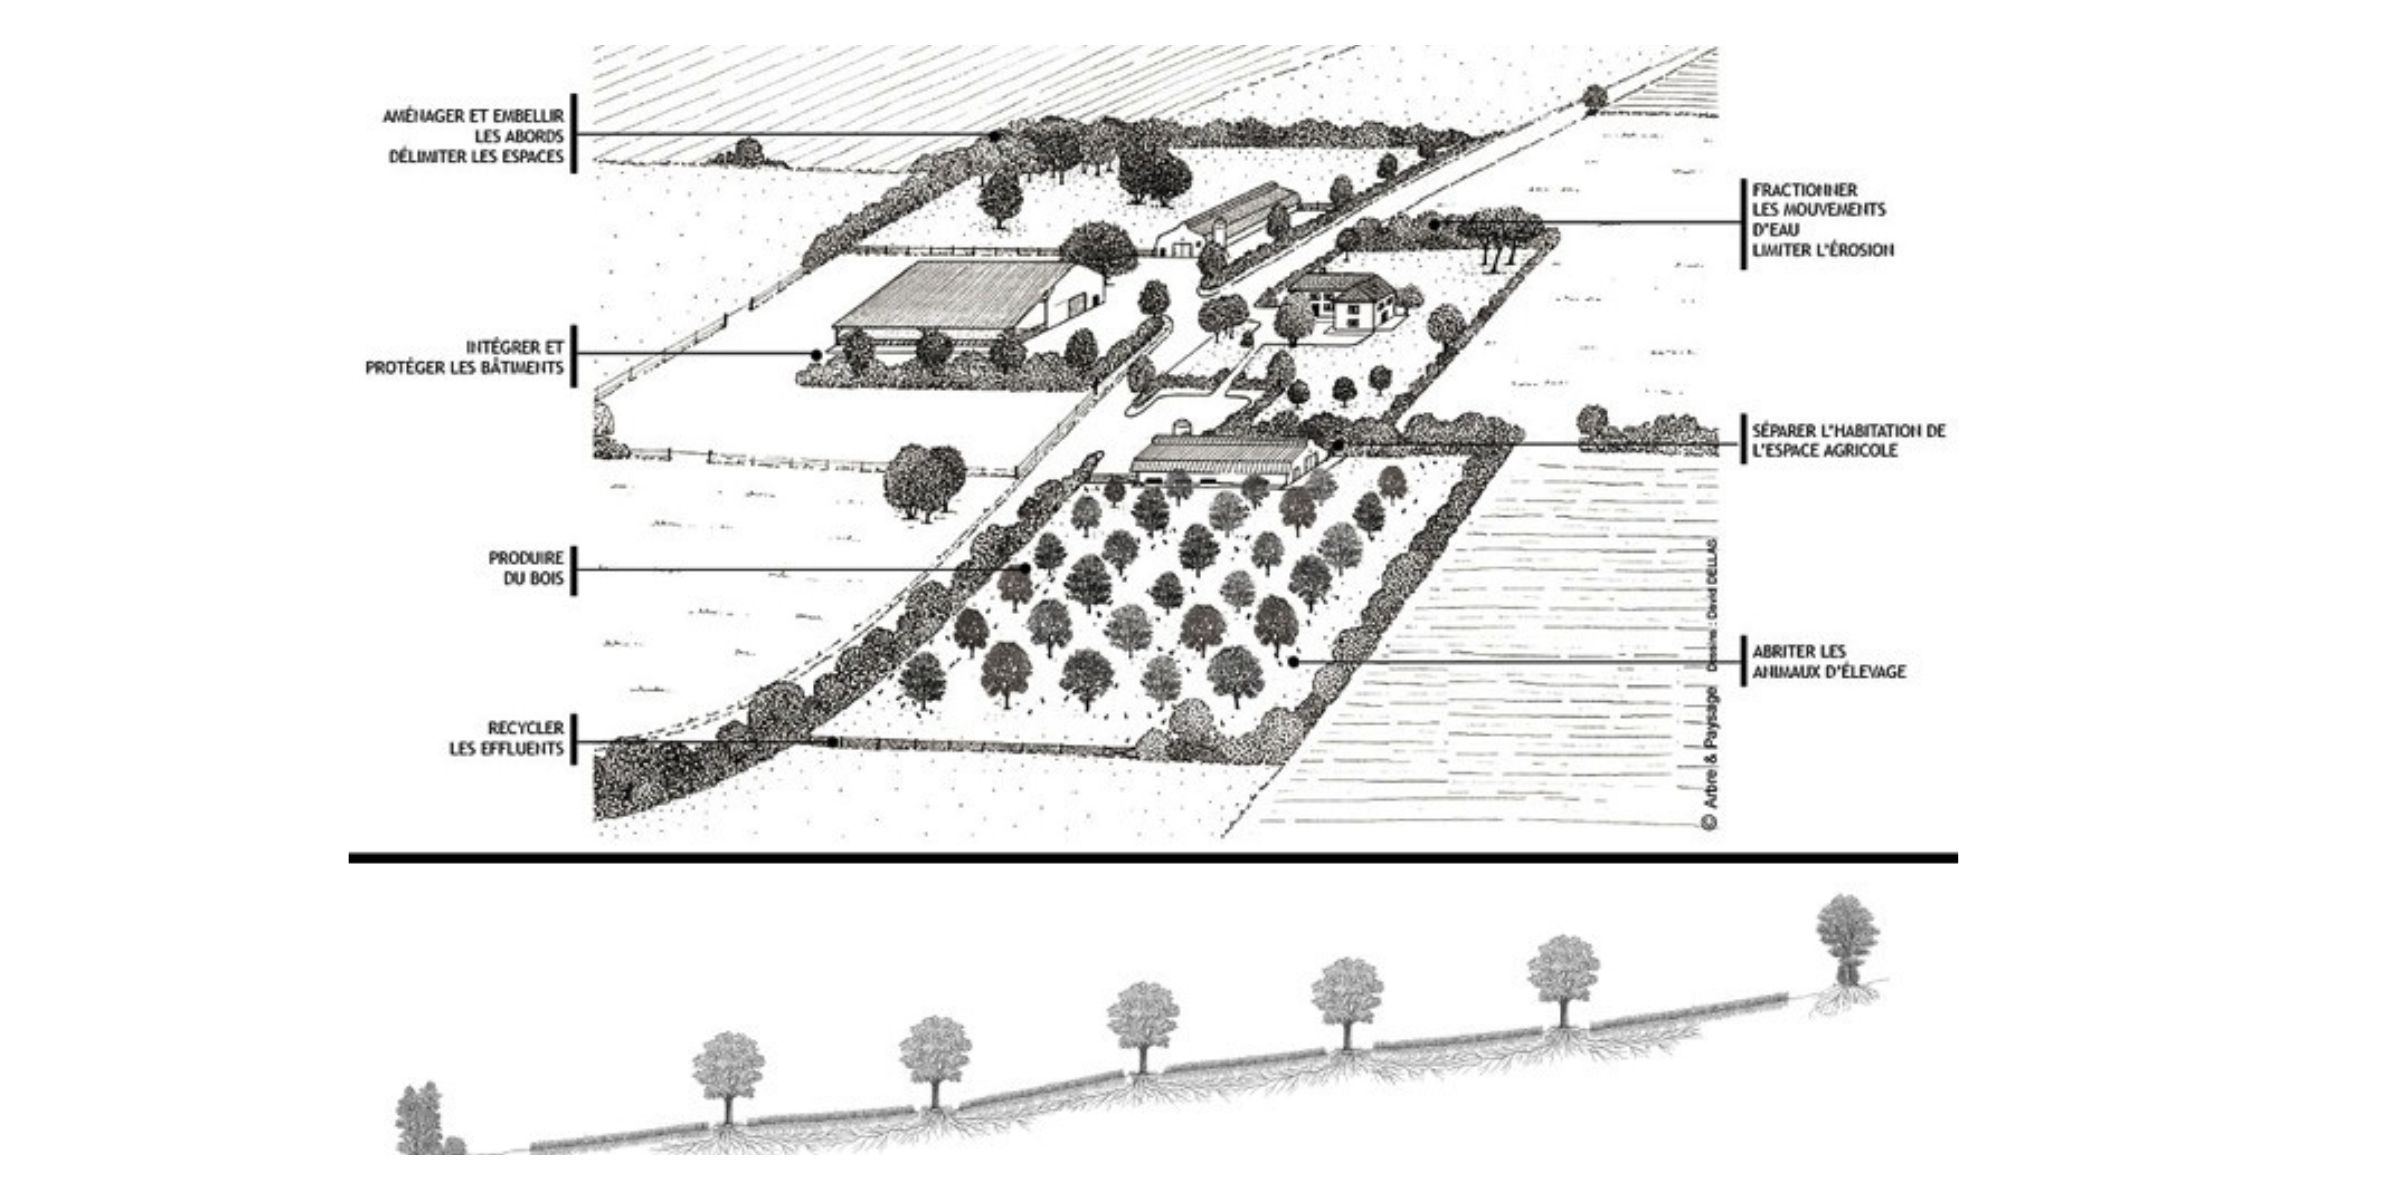 schémas agroforestier racinaire - utilisation de l'arbre dans une exploitation